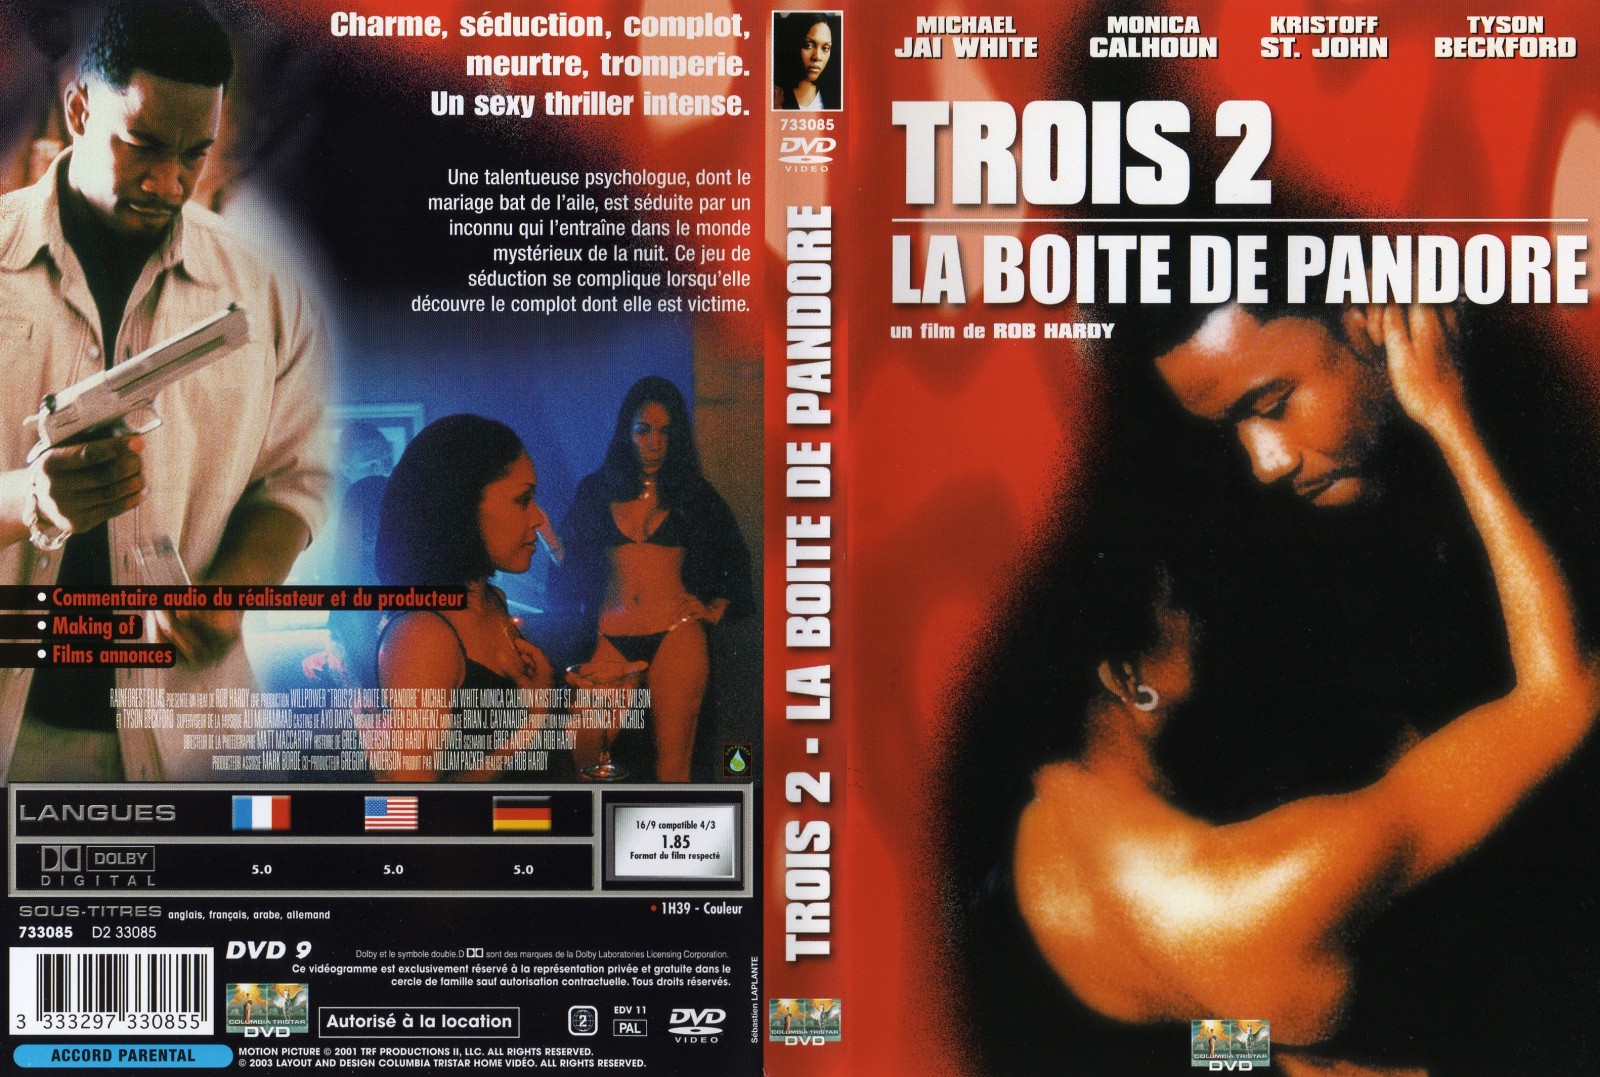 Jaquette DVD Trois 2 La boite de pandore